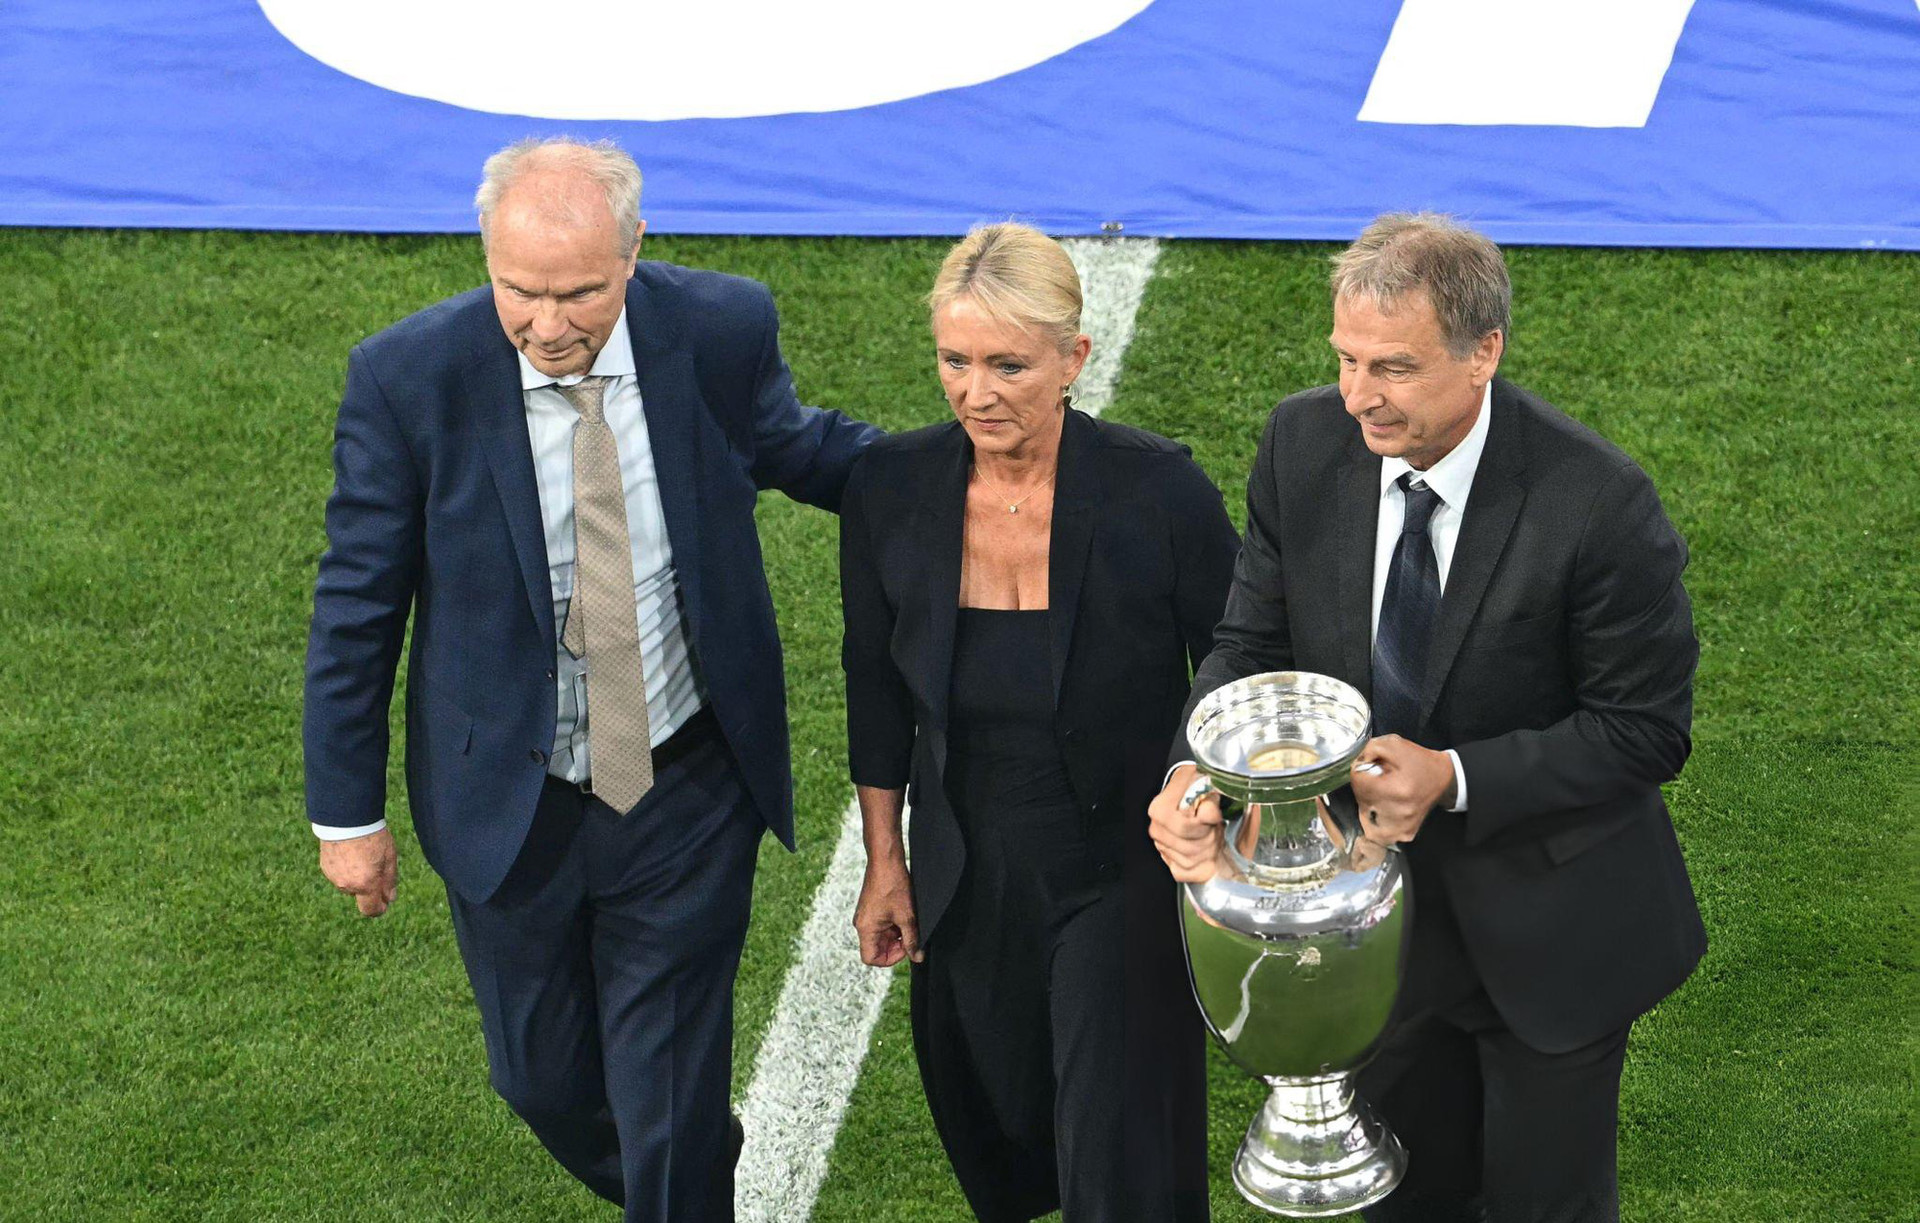 Bà Heidi - vợ huyền thoại Beckenbauer cùng hai cựu danh thủ tuyển Đức Bernard Dietz (trái) và Jurgen Klinnsmann - Ảnh: REUTERS